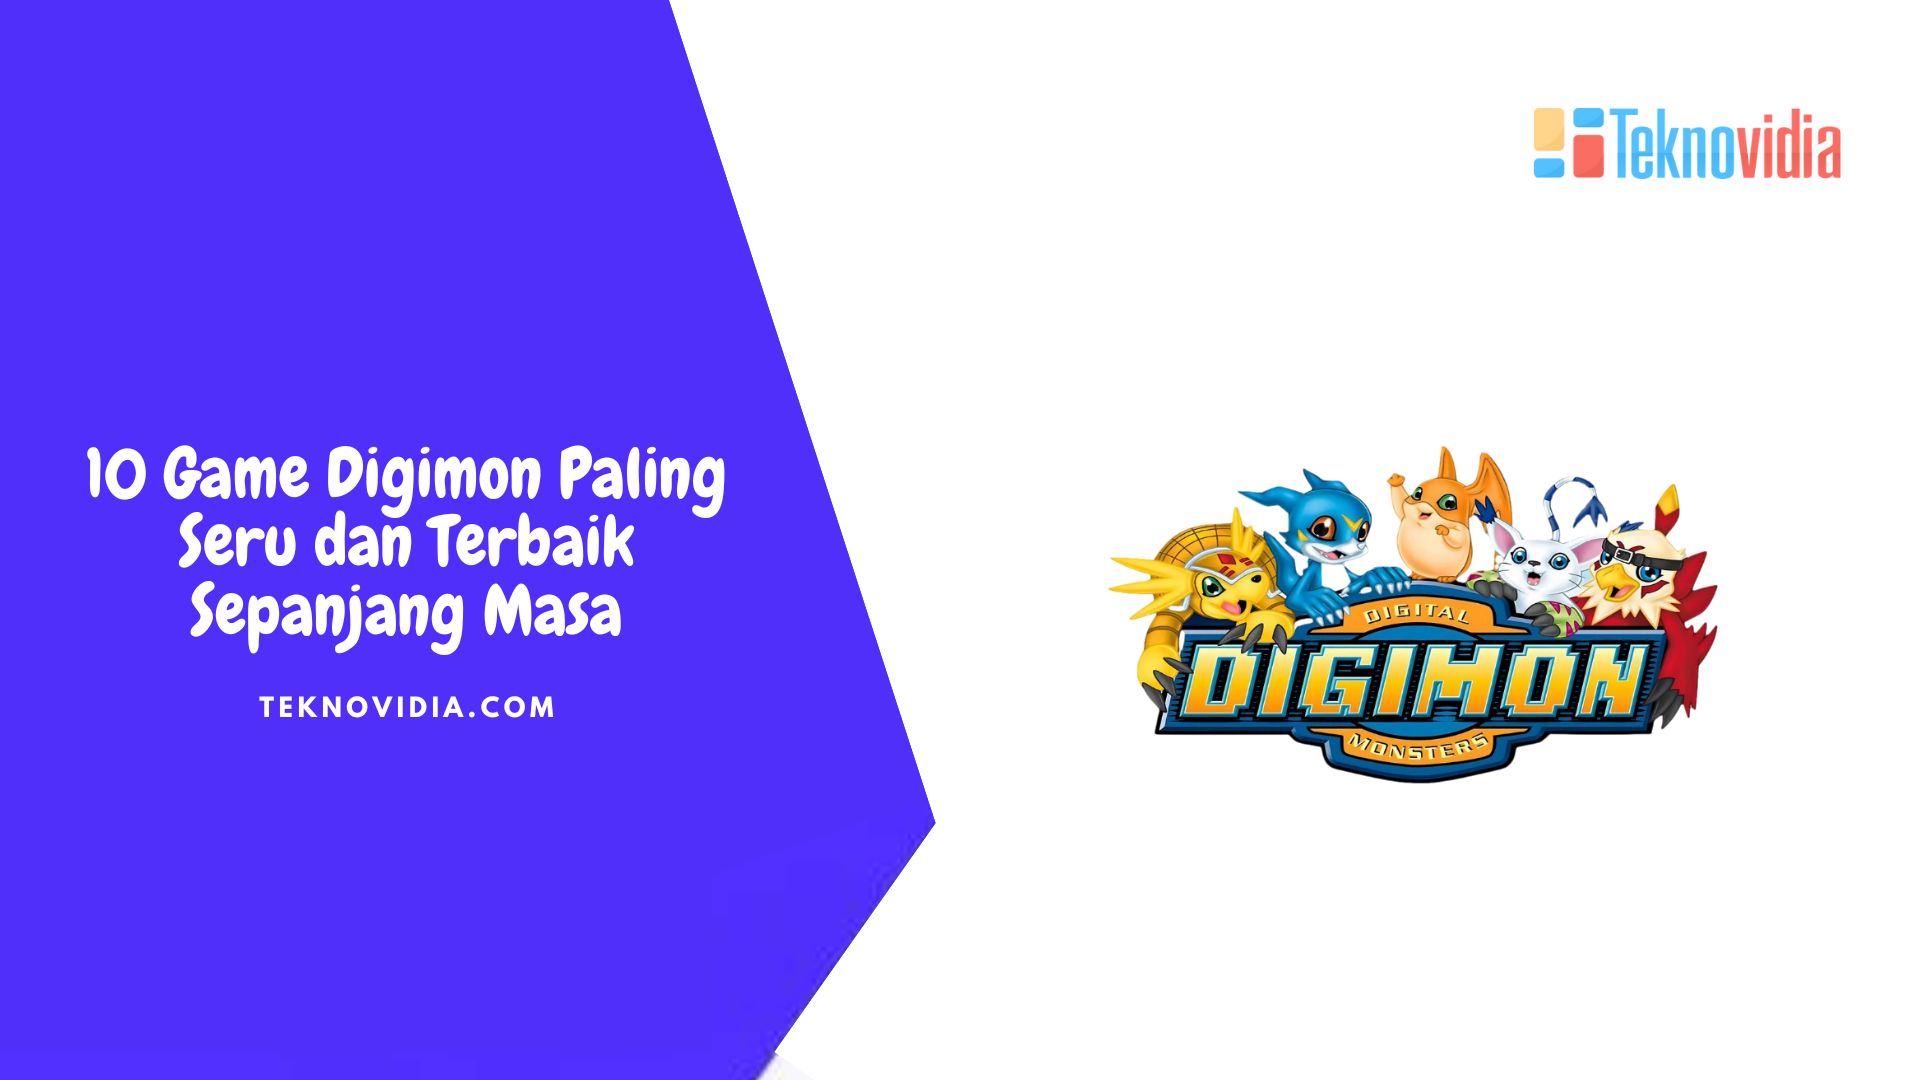 10 Game Digimon Paling Seru dan Terbaik Sepanjang Masa